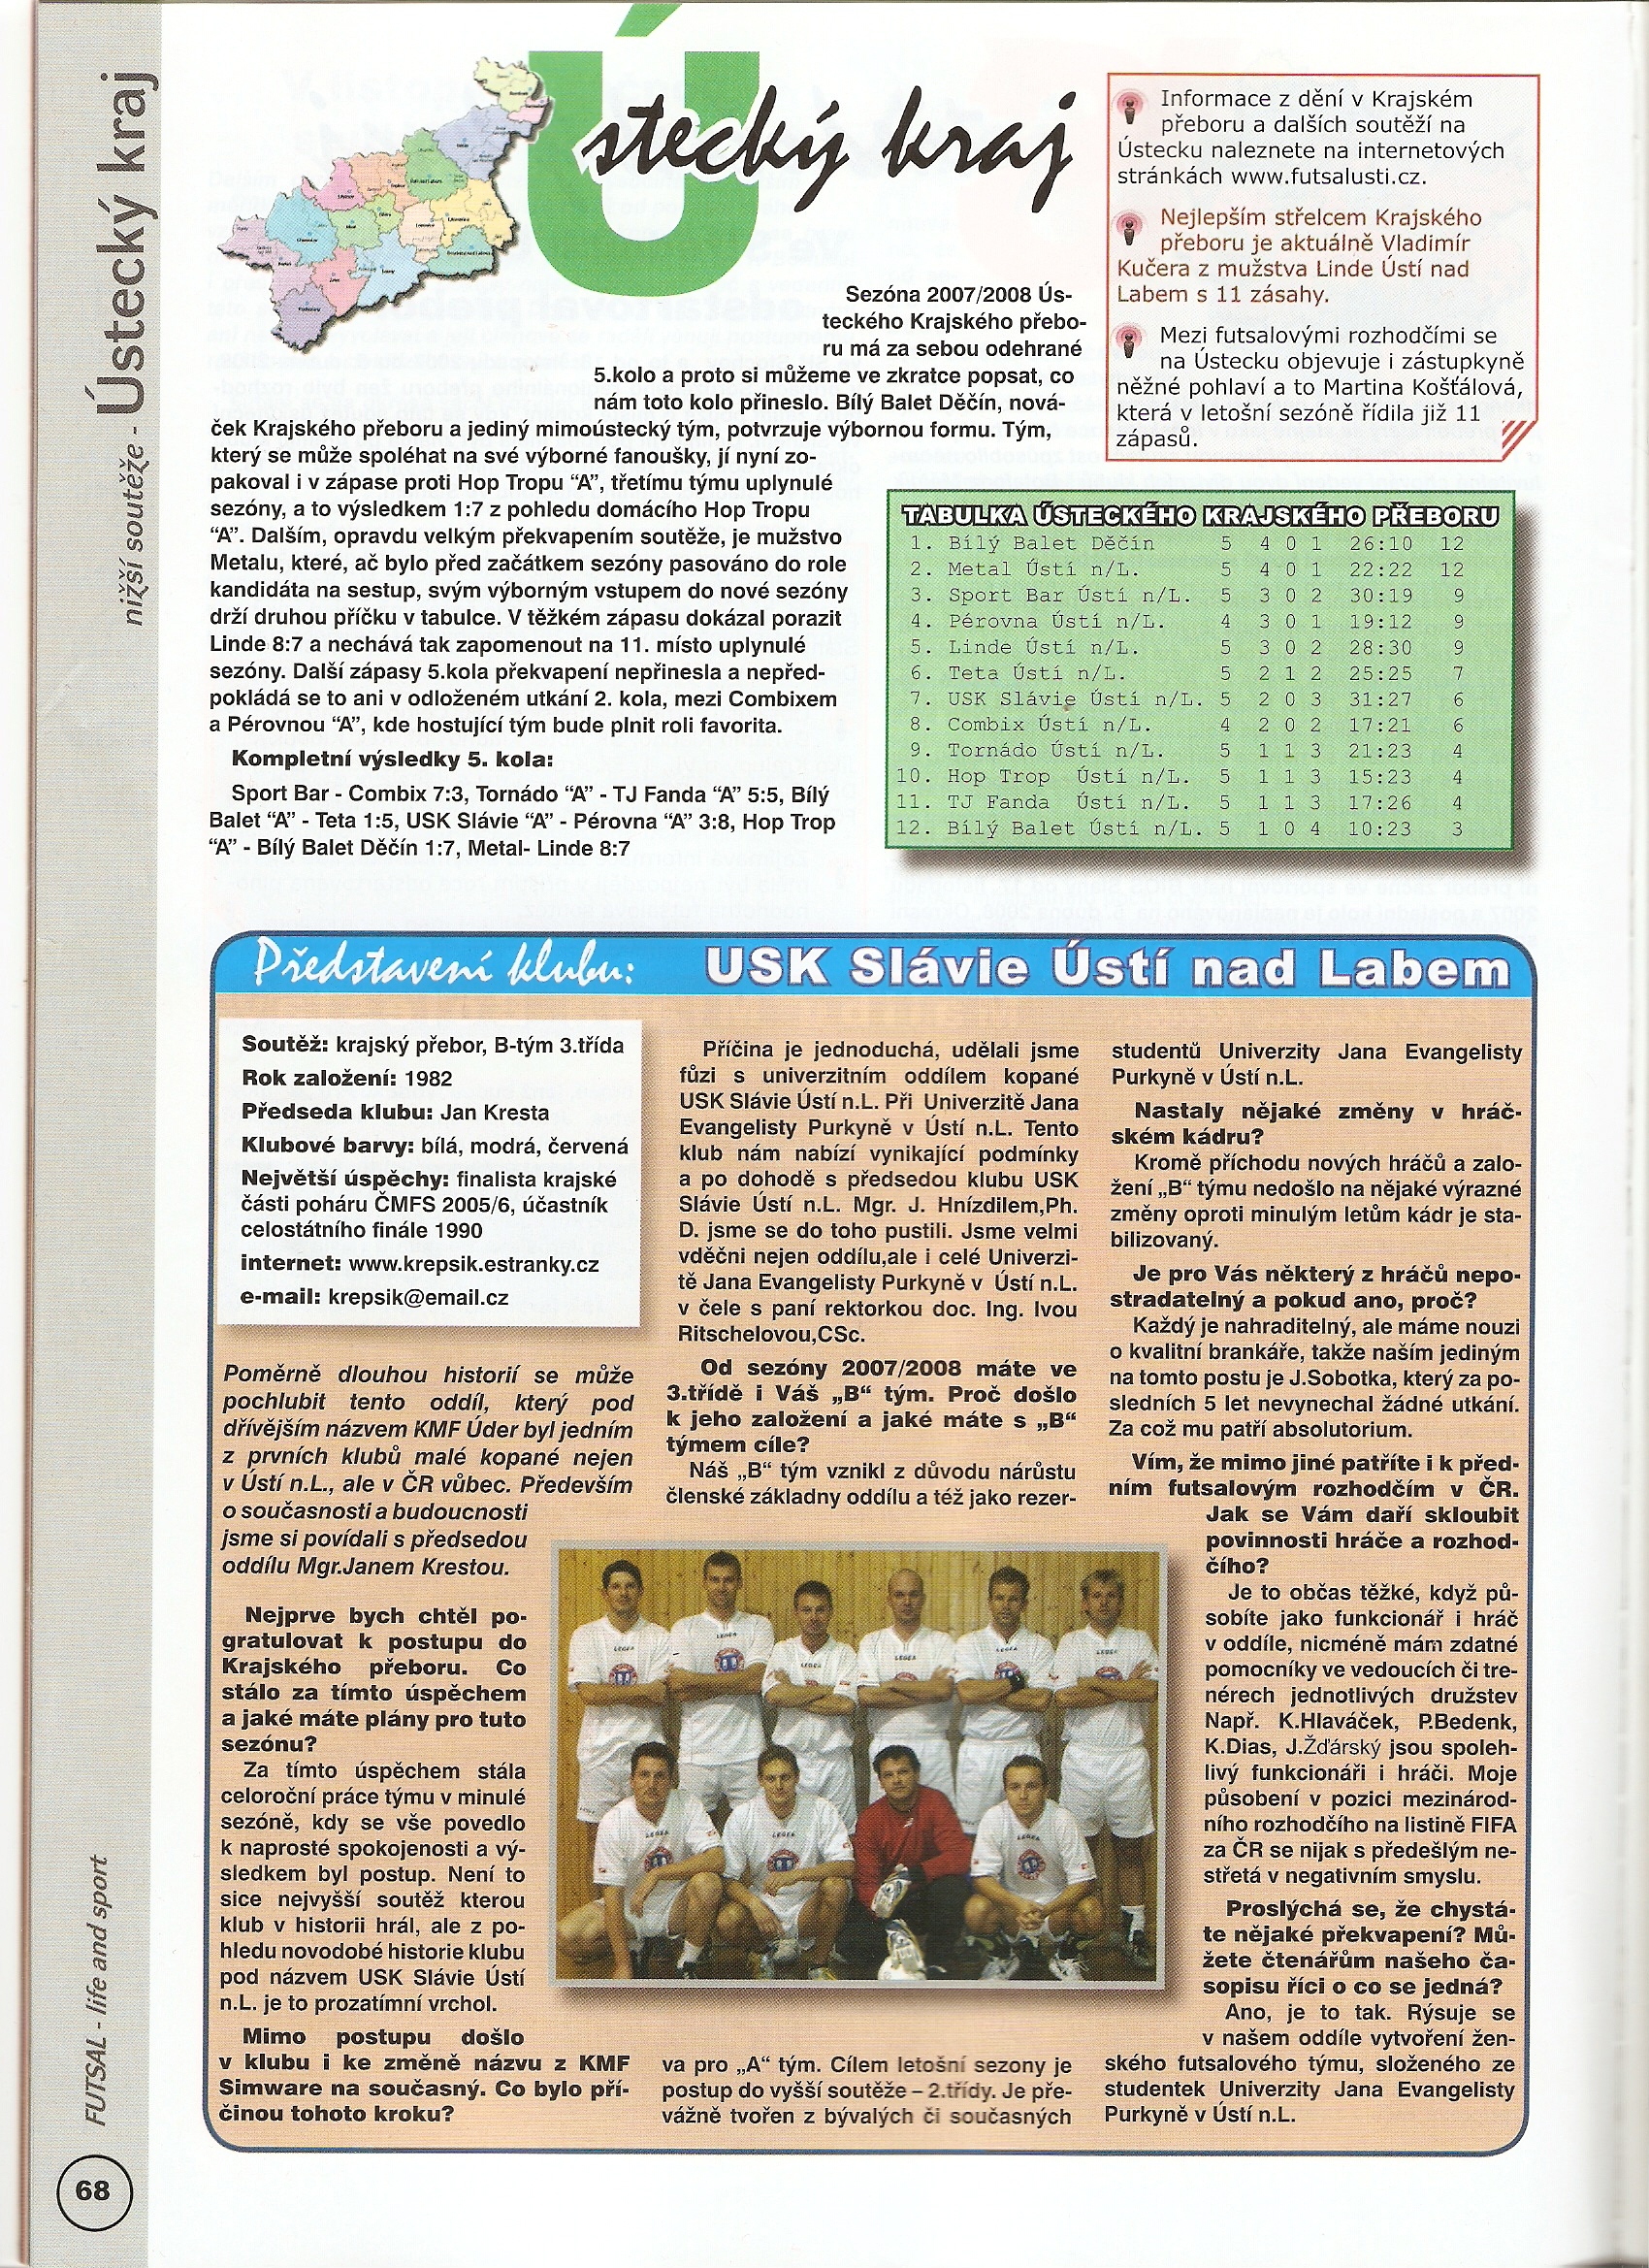 USK kopaná v Futsal magazinu1.jpg